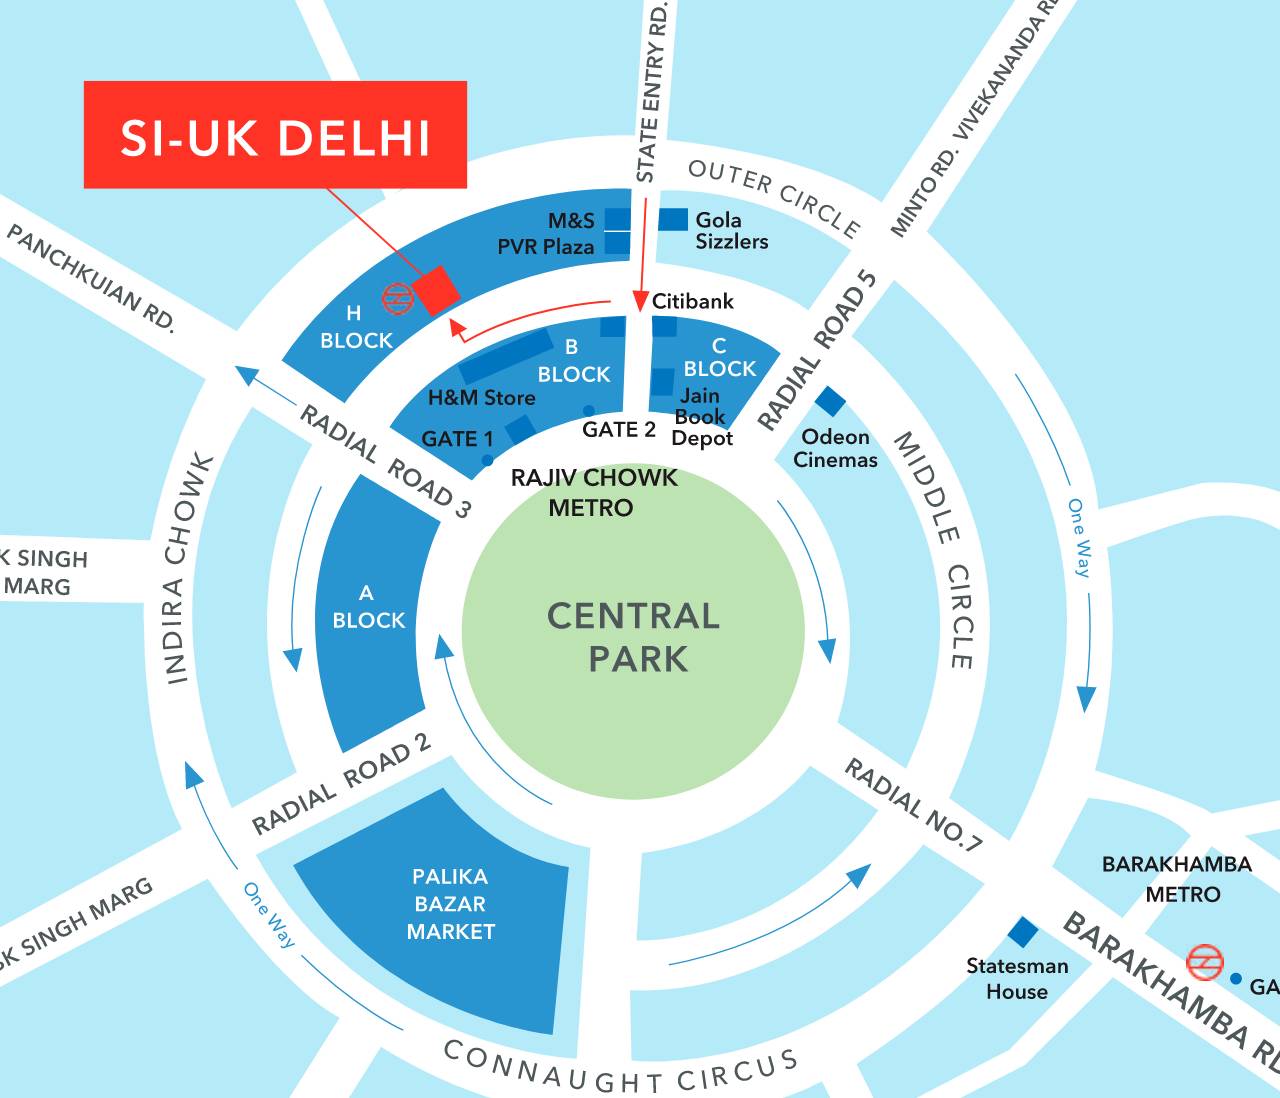 Si-UK Delhi Map